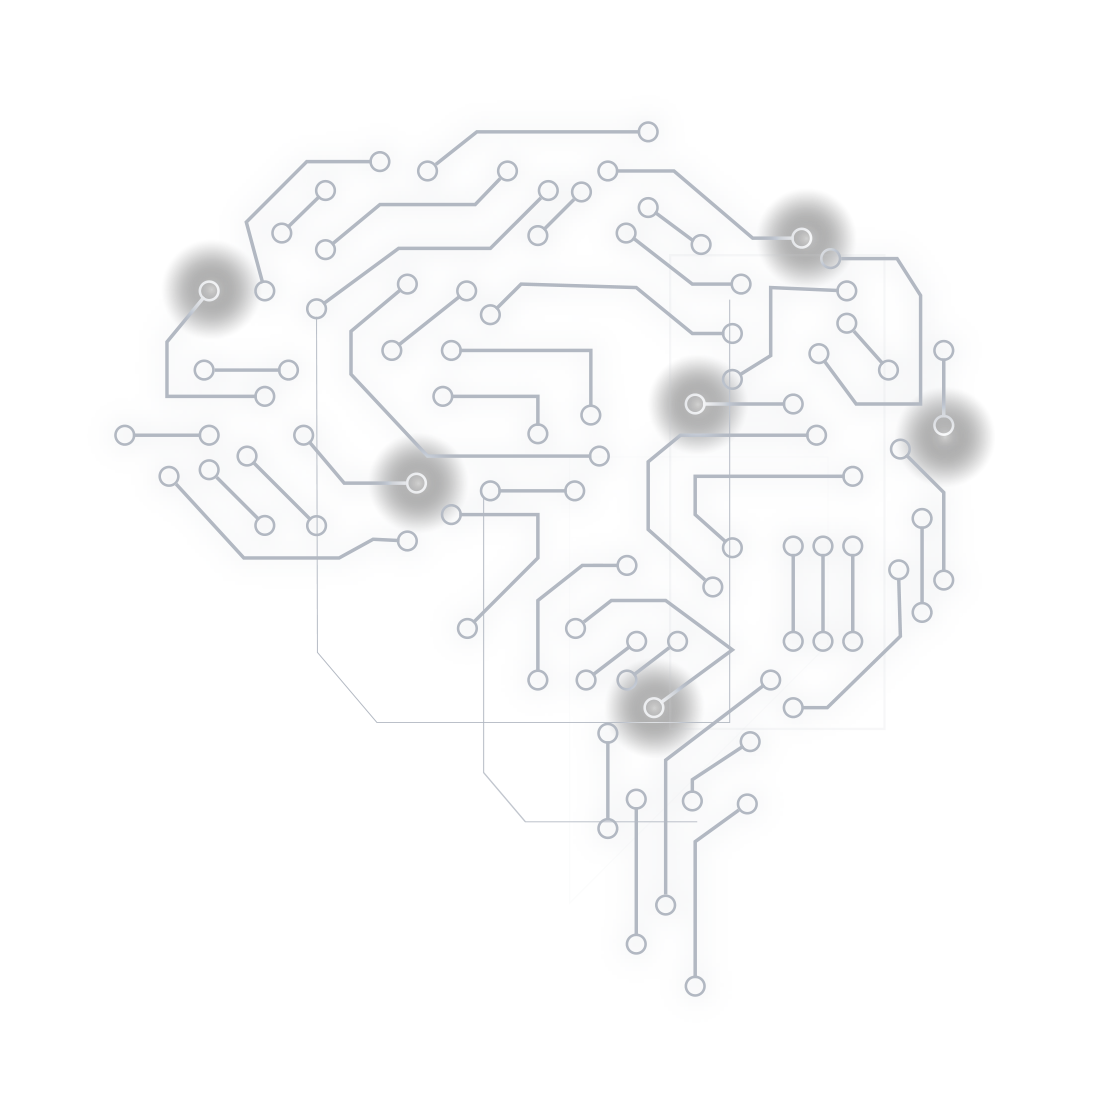 Grafik eines Gehirns bestehend aus grauen Schaltkreisen und leuchtenden Ankerpunkten.